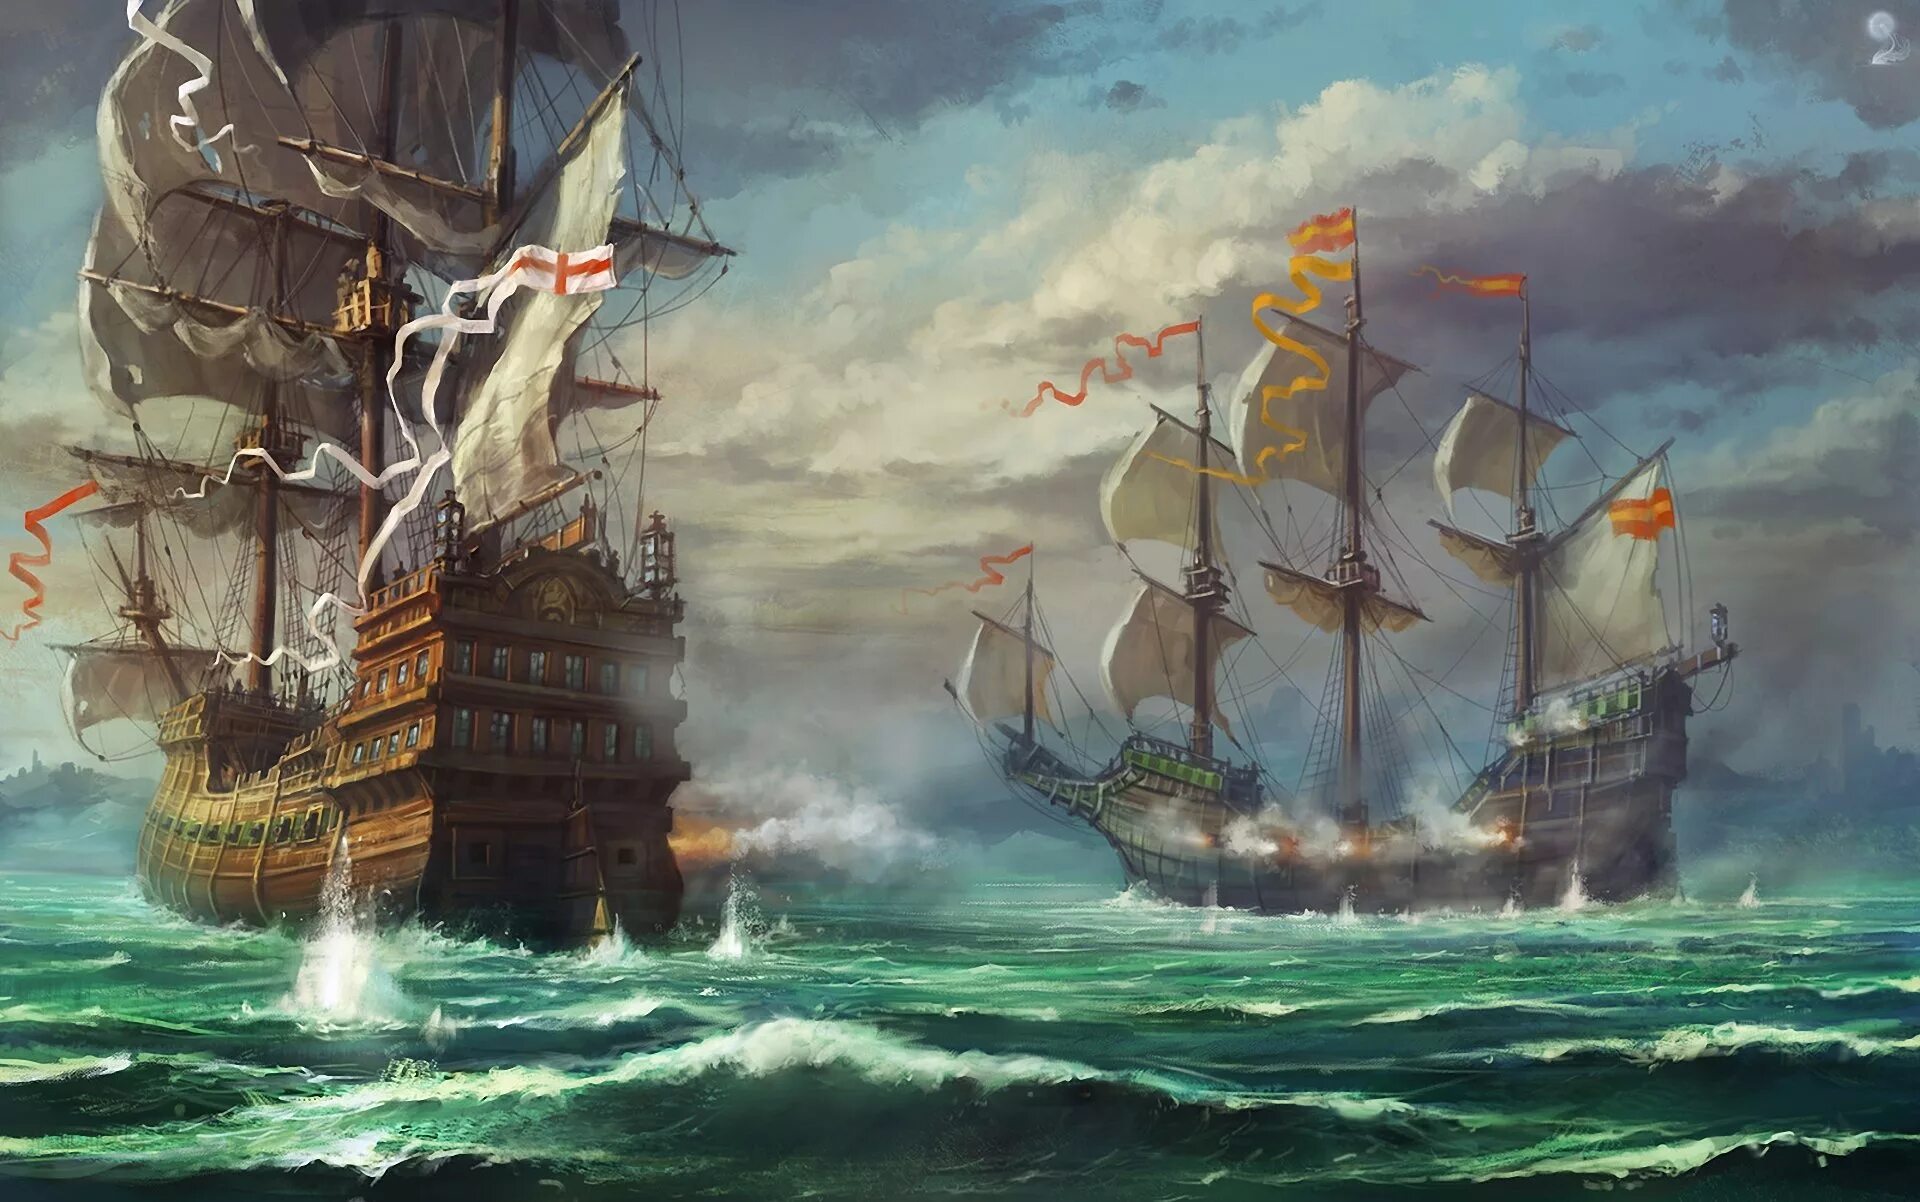 Пиратский Галеон сражение. Корабли битвы - эпоха пиратов - пират корабль Галеон. Морские баталии художник Абрахам Хантер. Читать про корабли